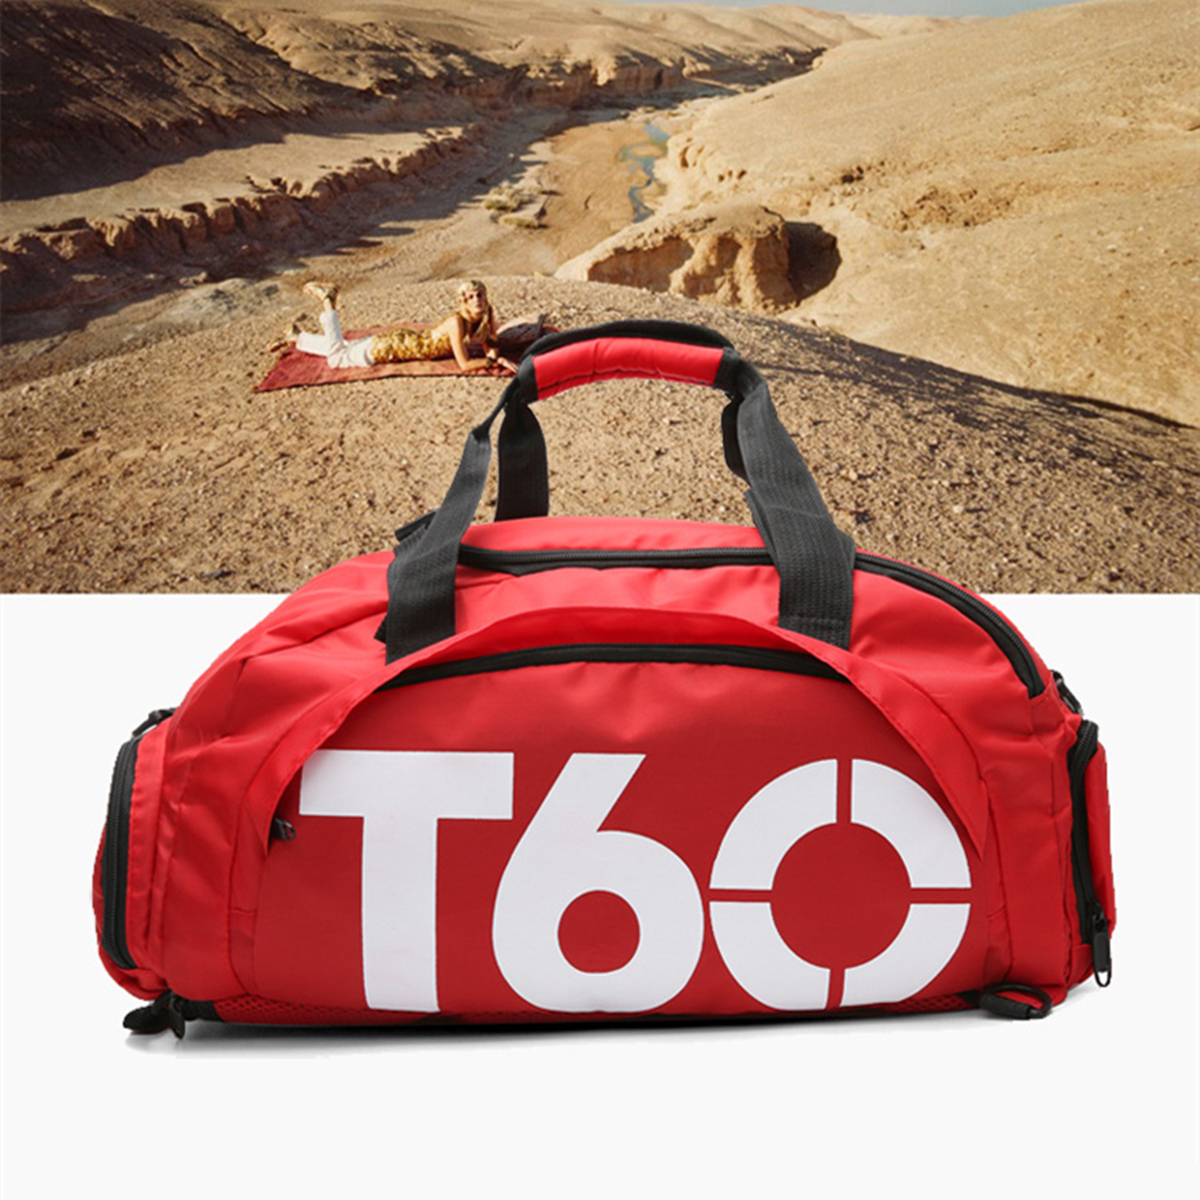 17L-Sports-Gym-Backpack-Fitness-Outdoor-Camping-Travel-Shoulder-Bag-Handbag-Shoe-Bag-1352205-1